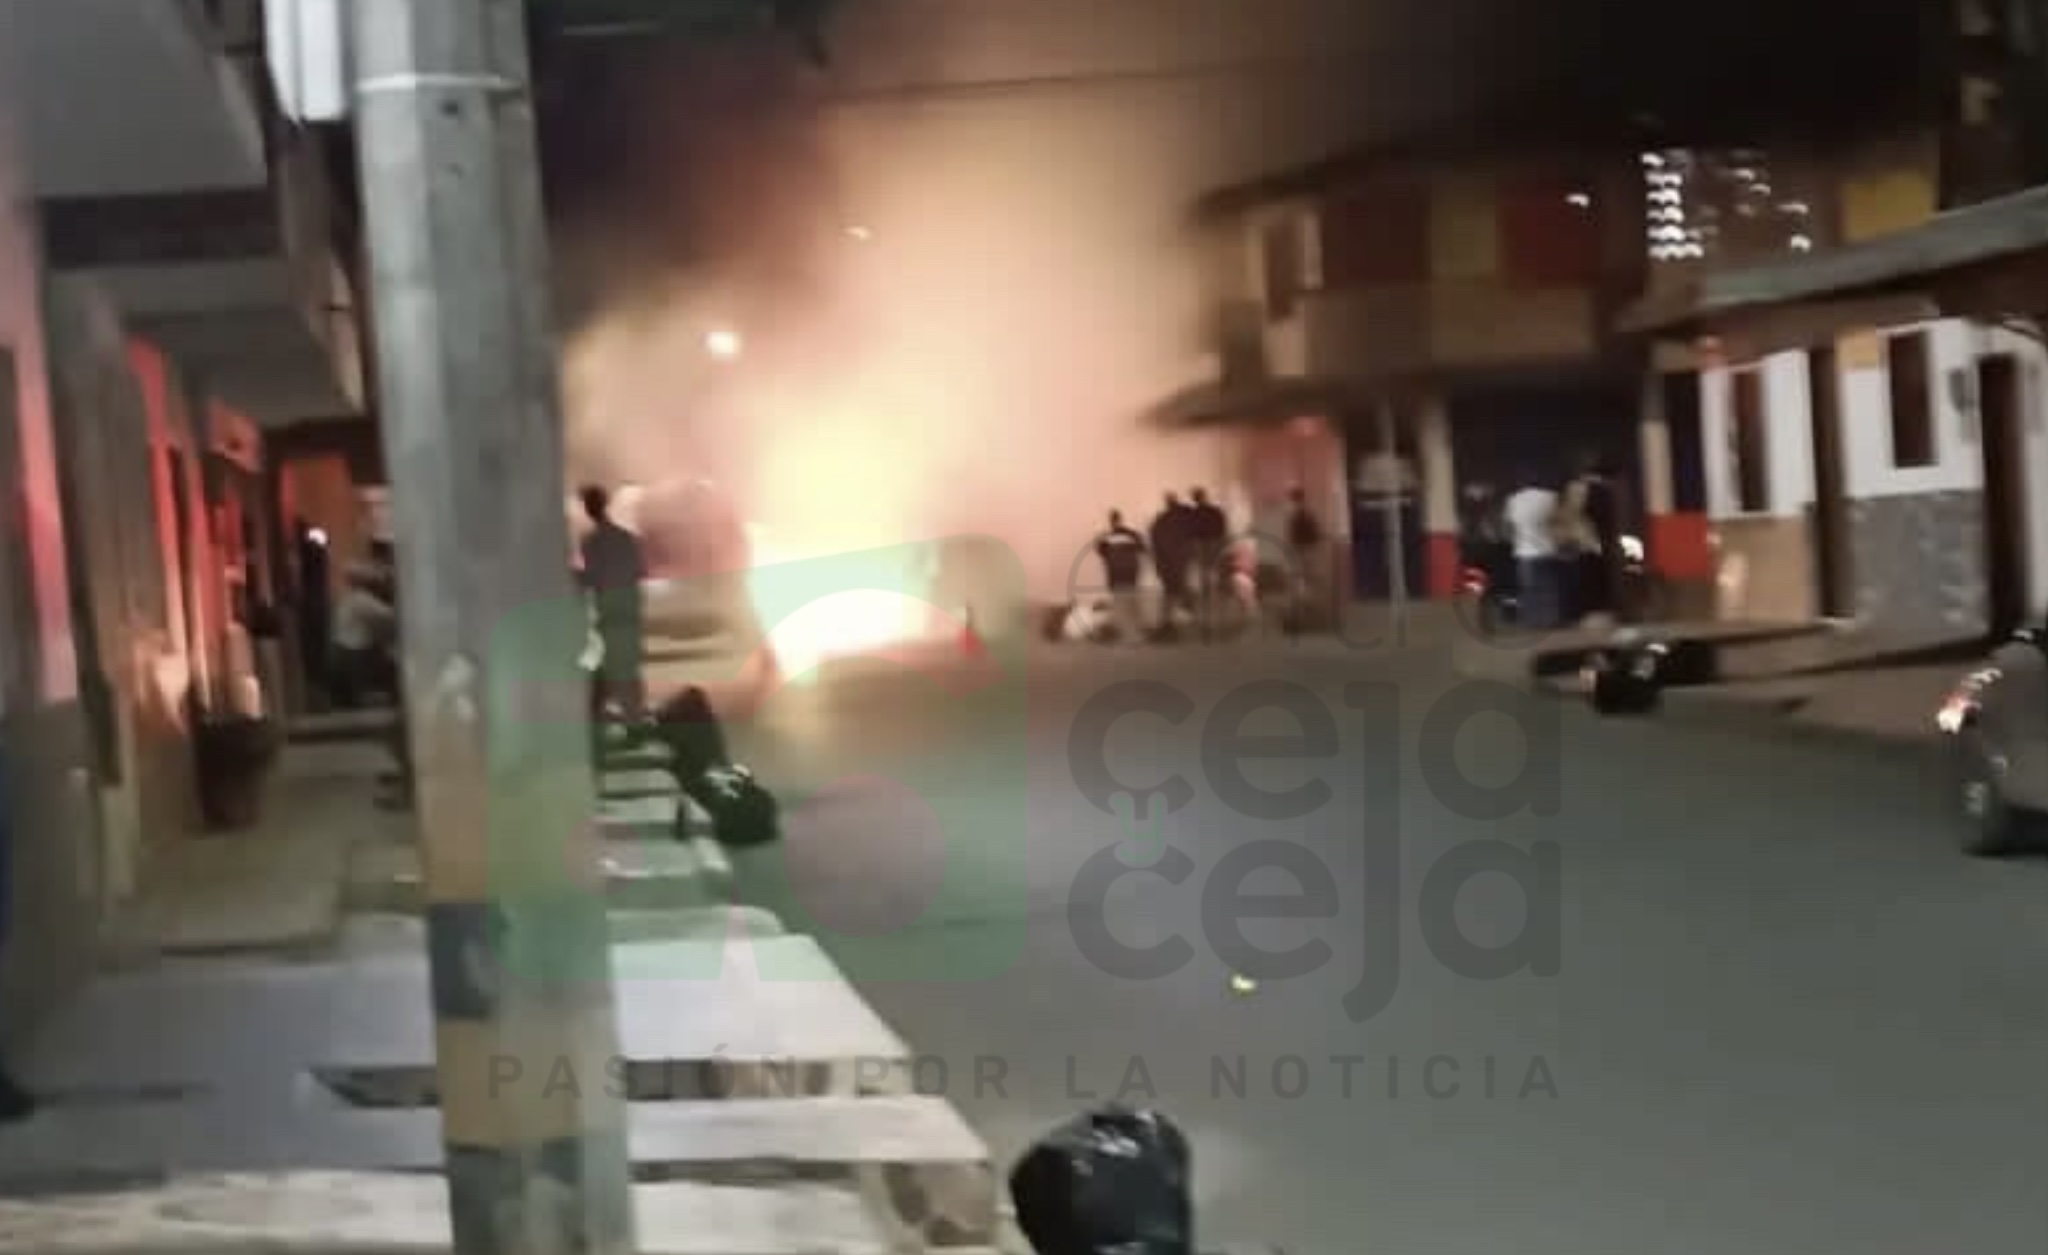 Incendio dentro de local de comidas en La Ceja dejó pérdidas menores